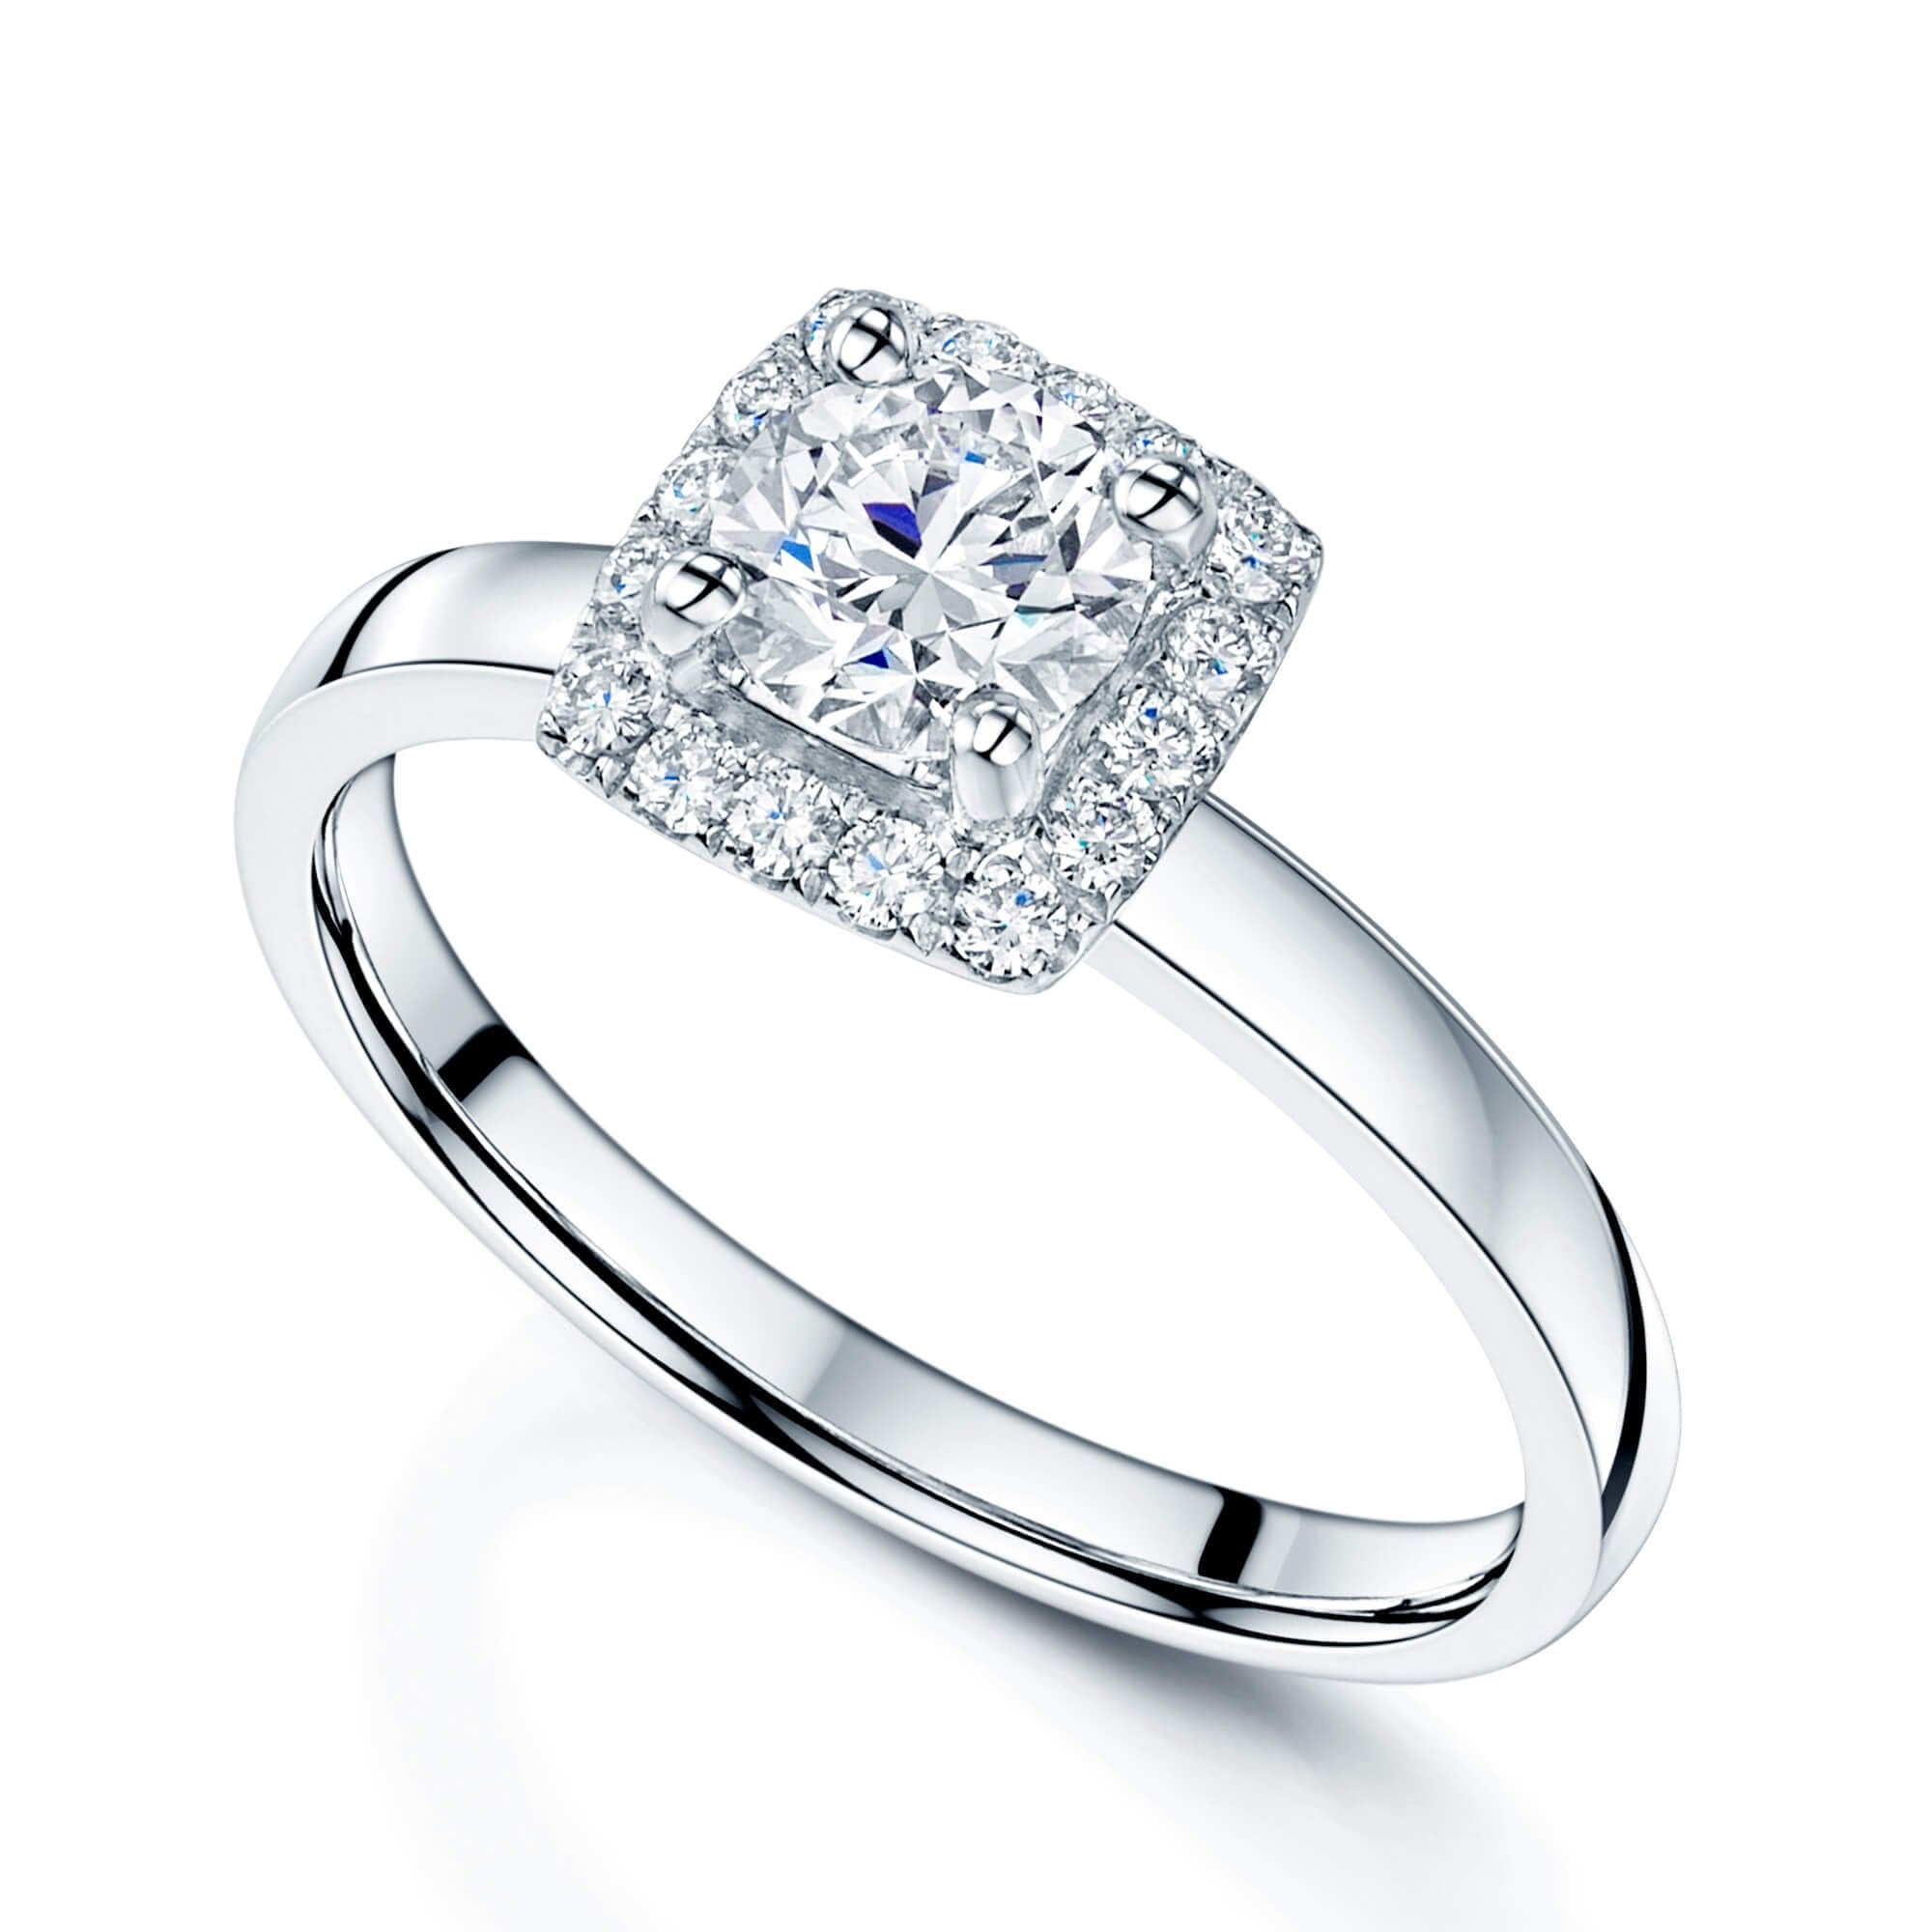 Platinum GIA Certificated Round Brilliant Cut Solitaire Diamond Halo Ring